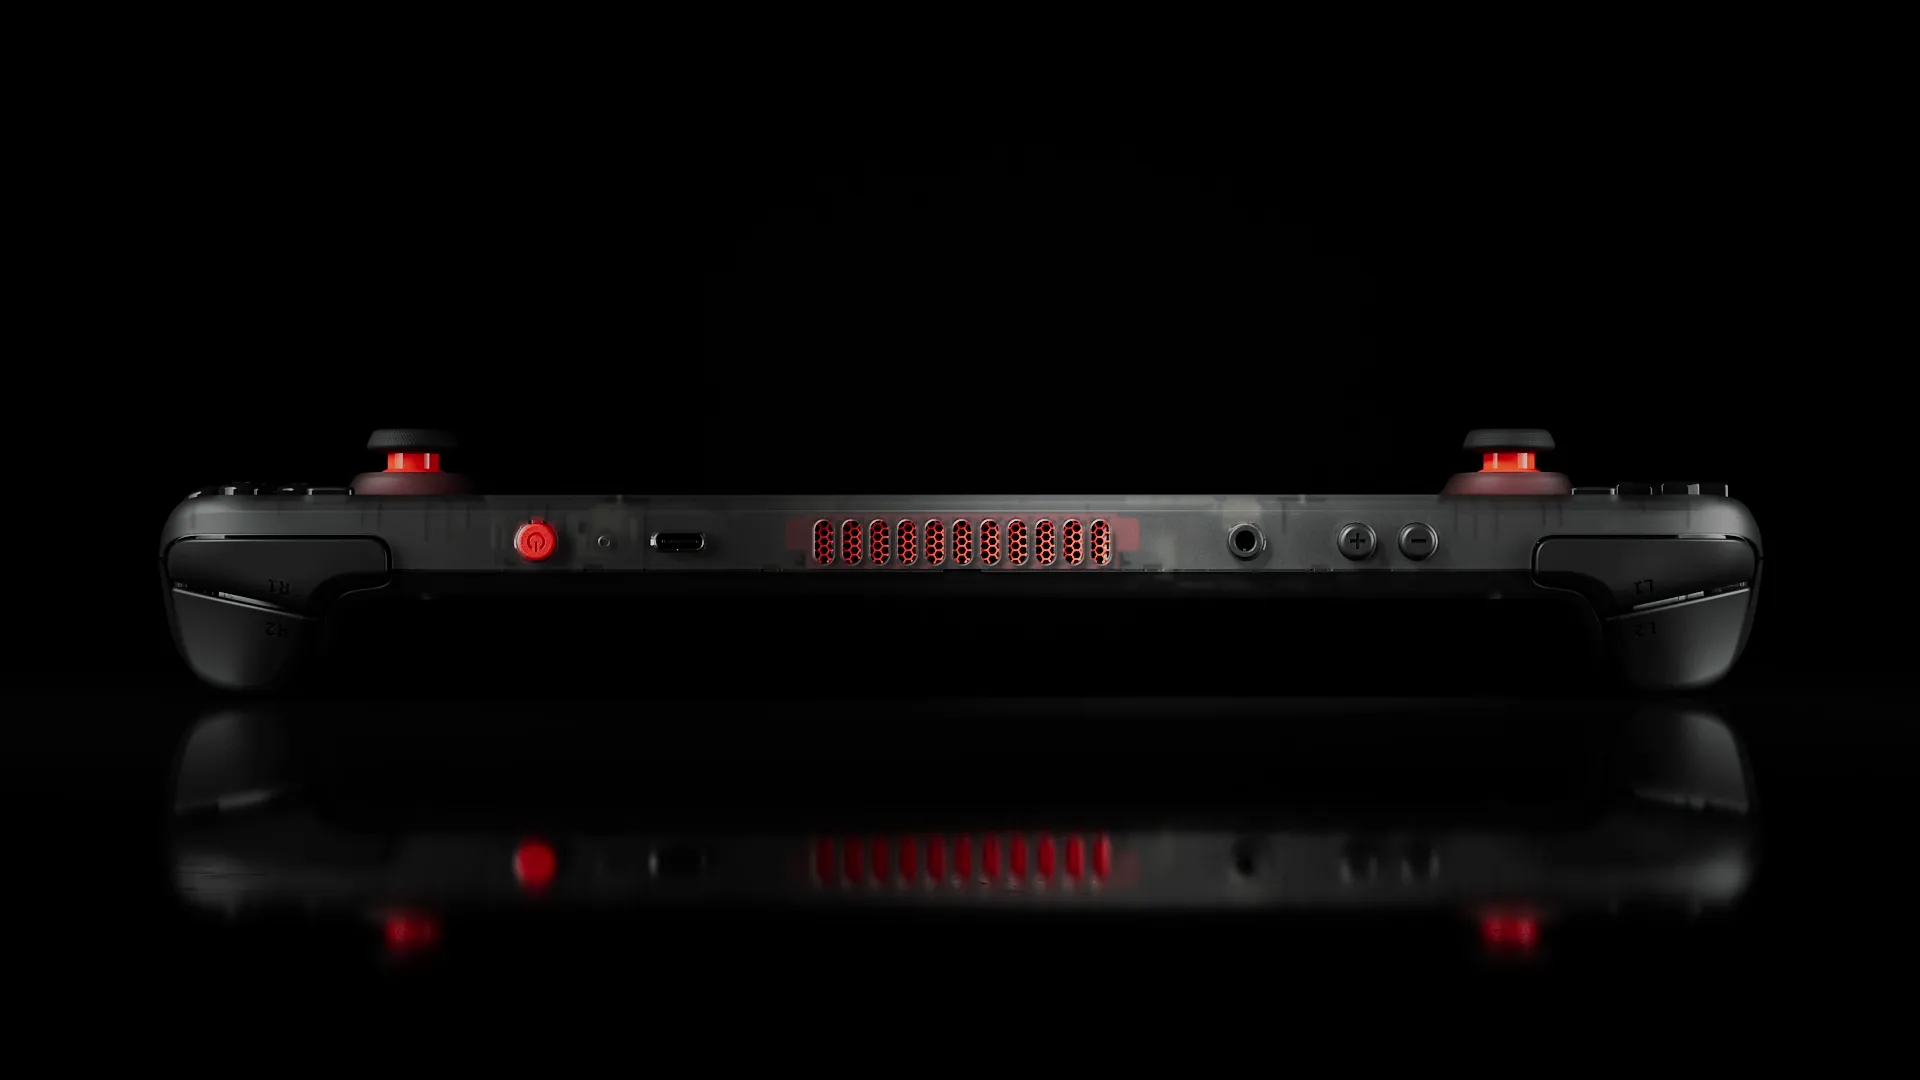 Steam Deck OLED chính thức ra mắt với màn hình HDR và cải thiện pin